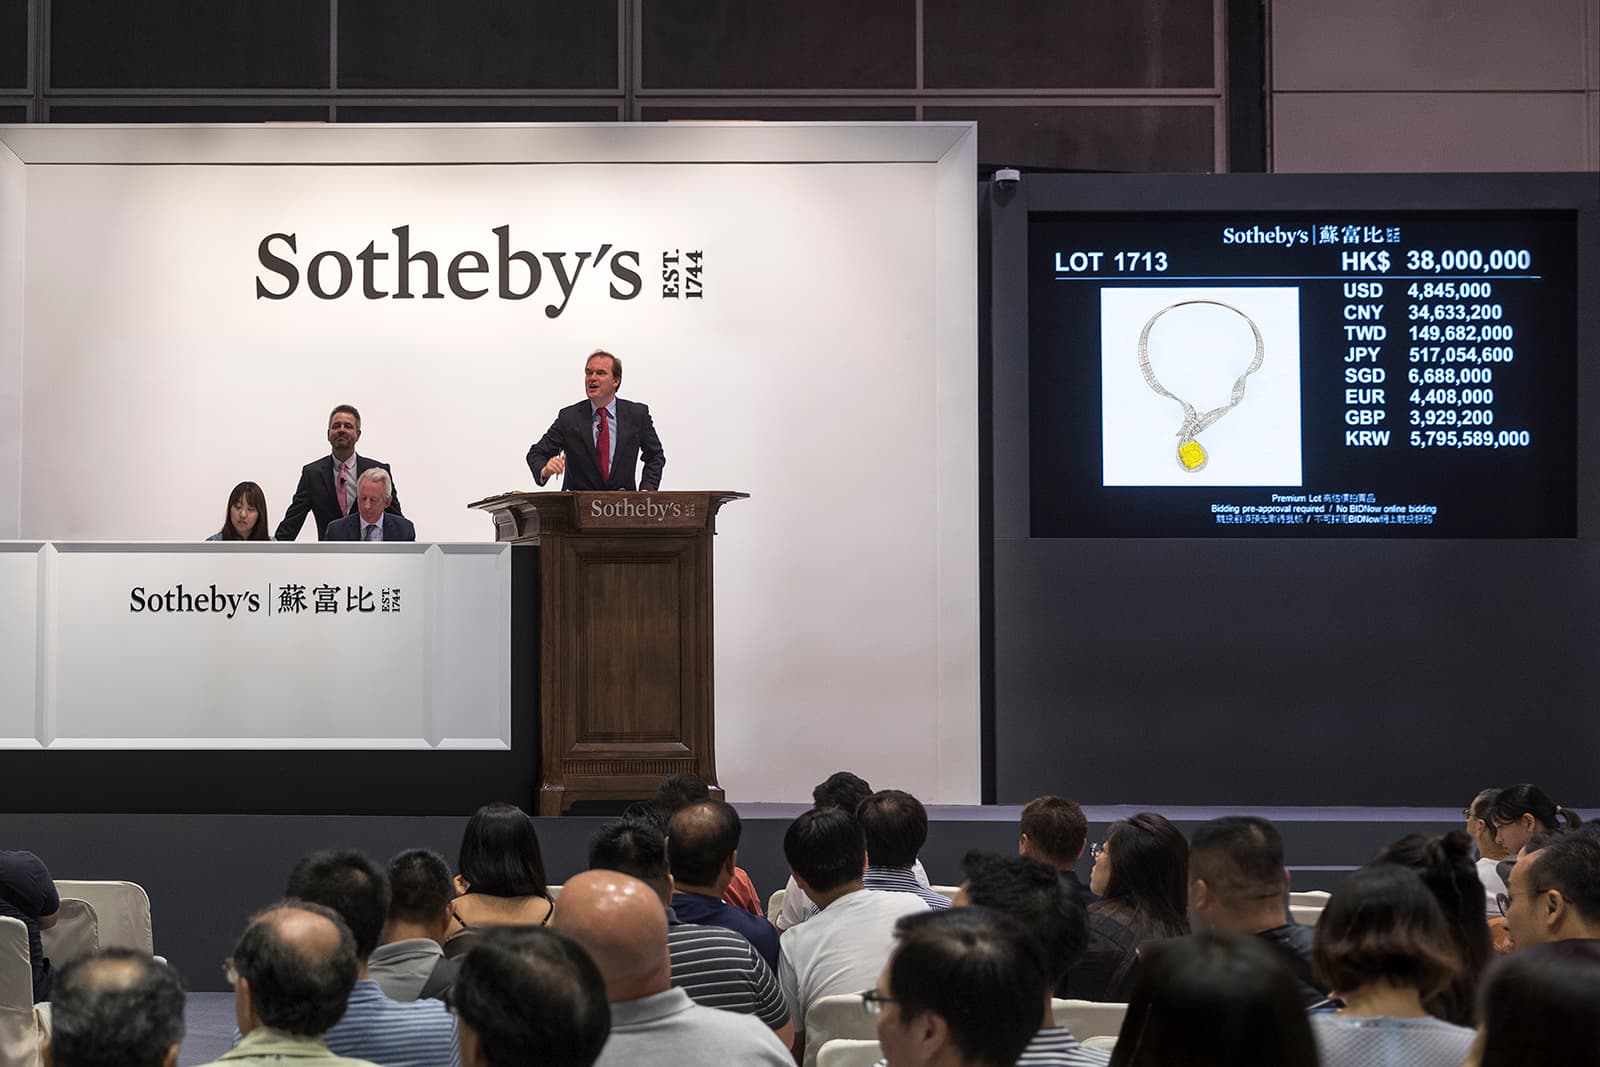 Колье Анны Ху 'Dunhuang Pip'  7 октября 2019 года было продано на аукционе Sotheby's в Гонконге за 5.78 миллионов долларов